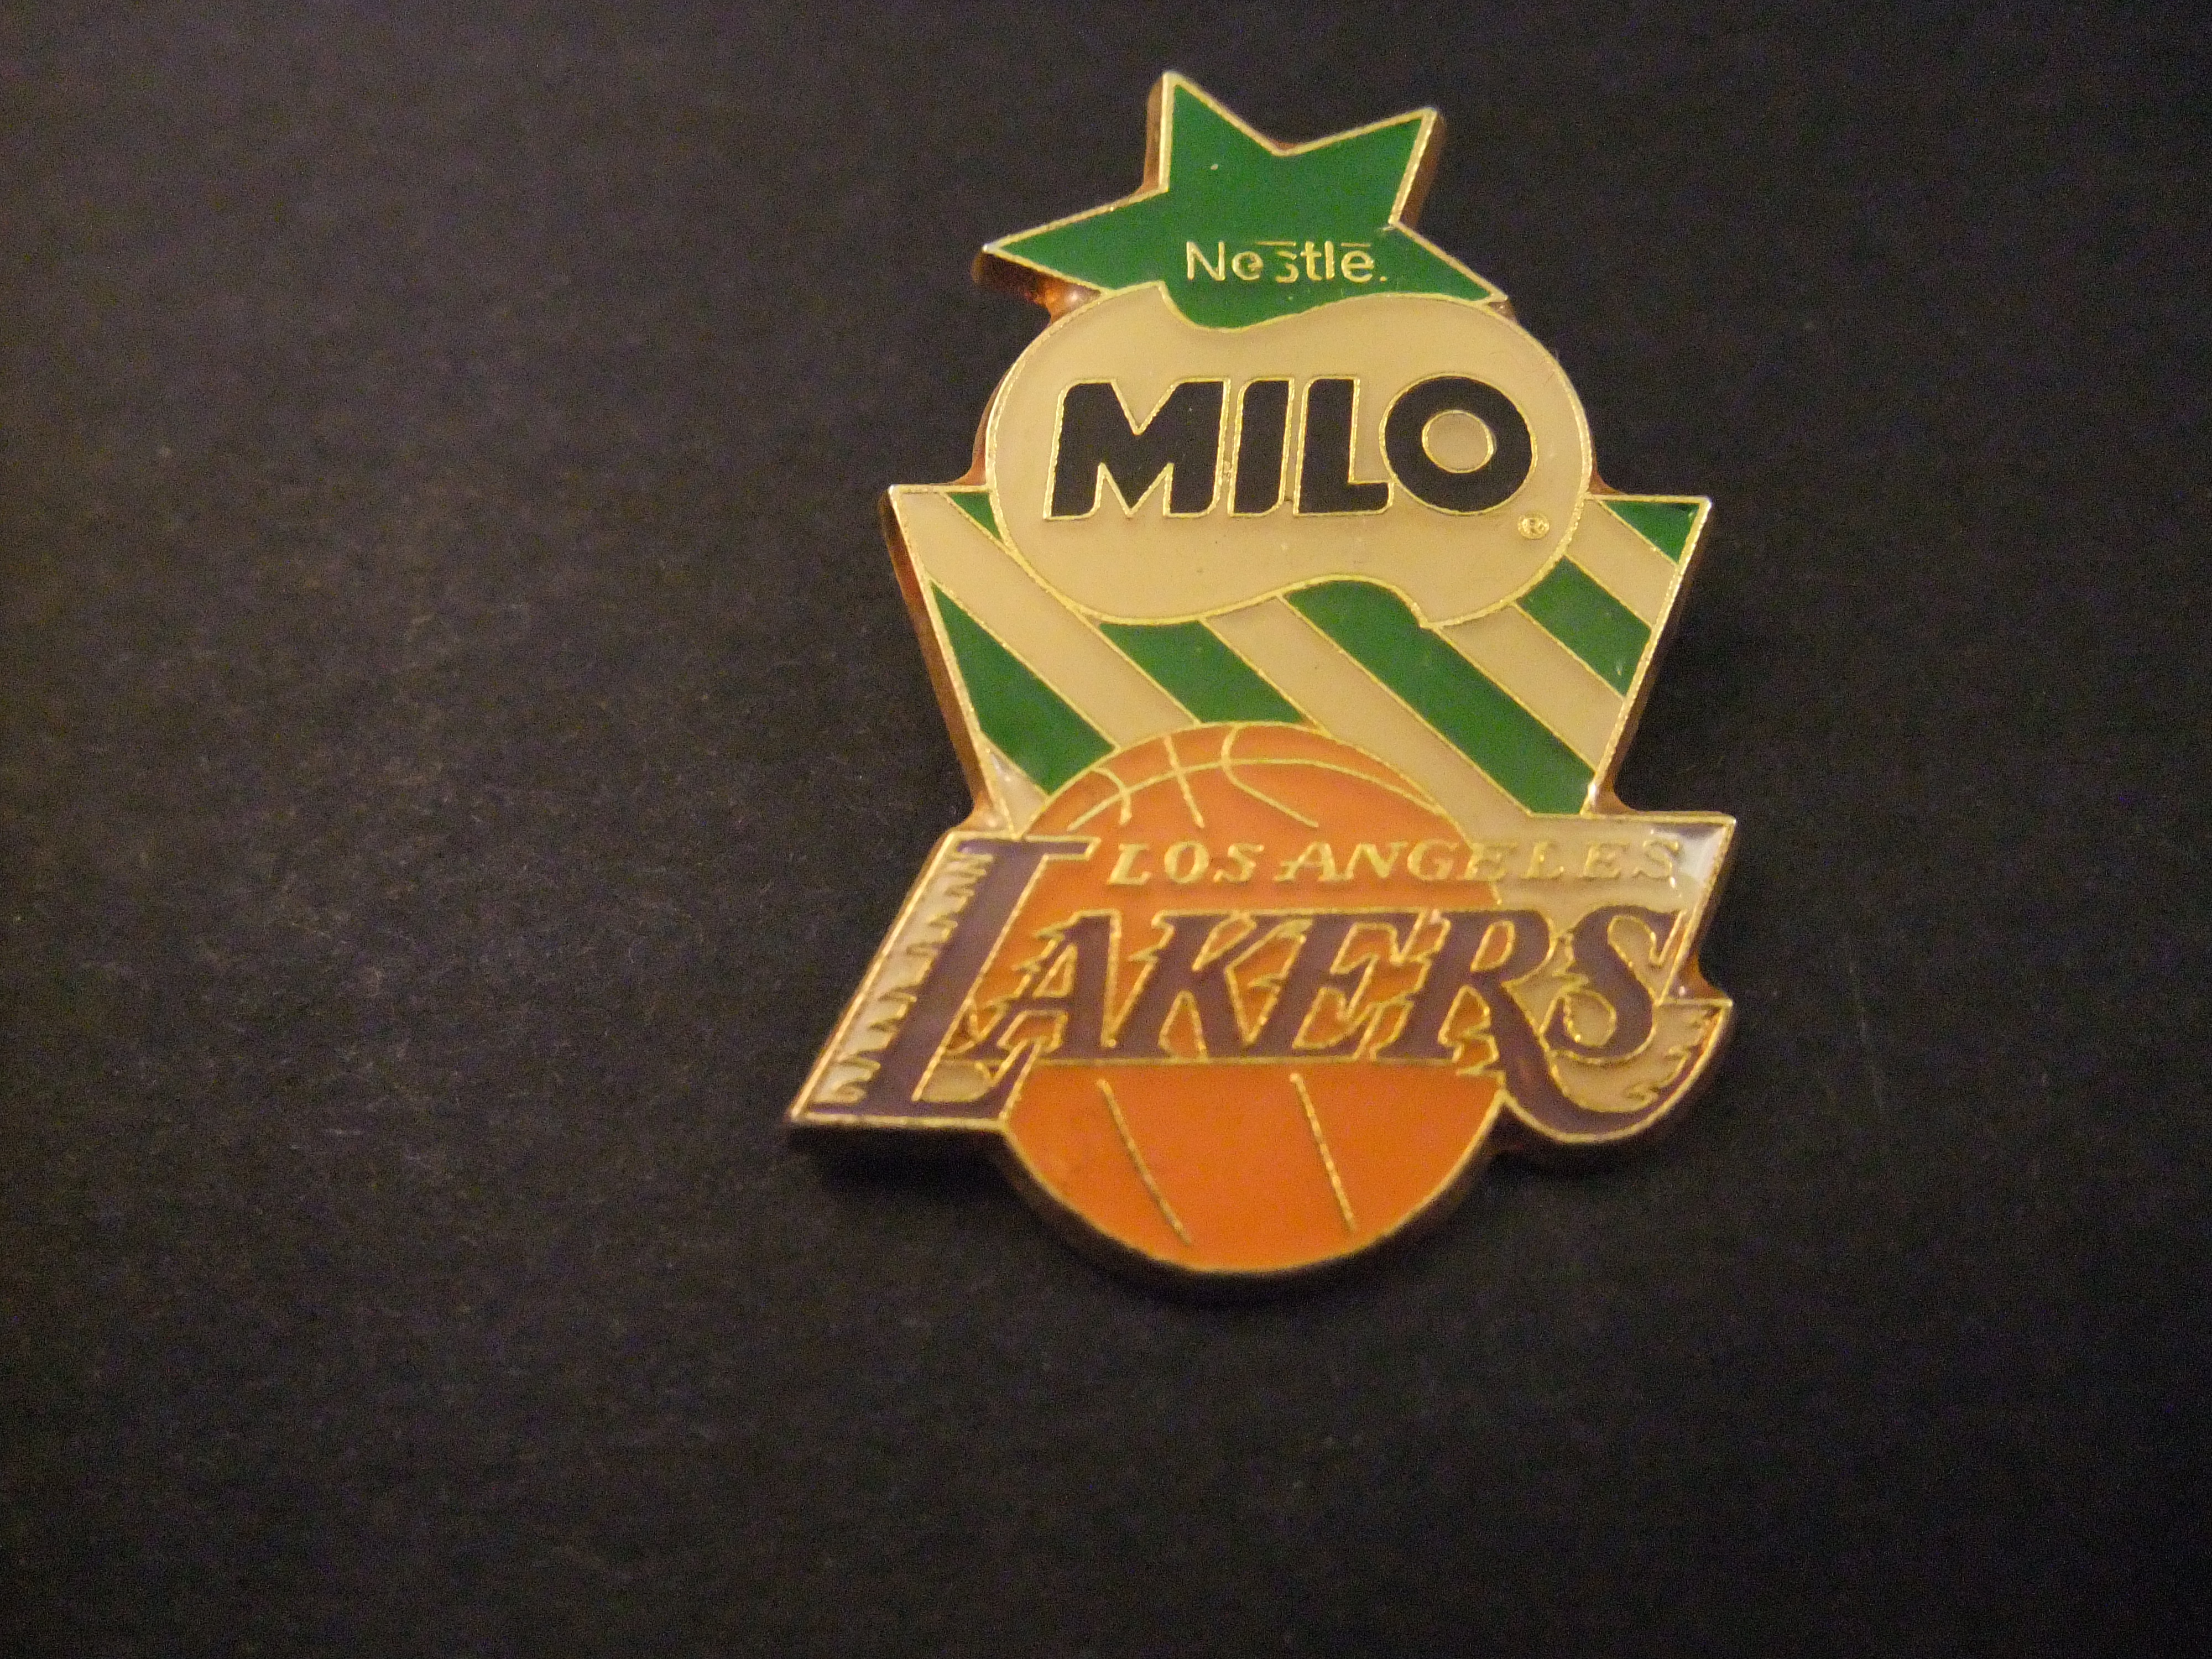 Los Angeles Lakers American basketballteam (NBA)